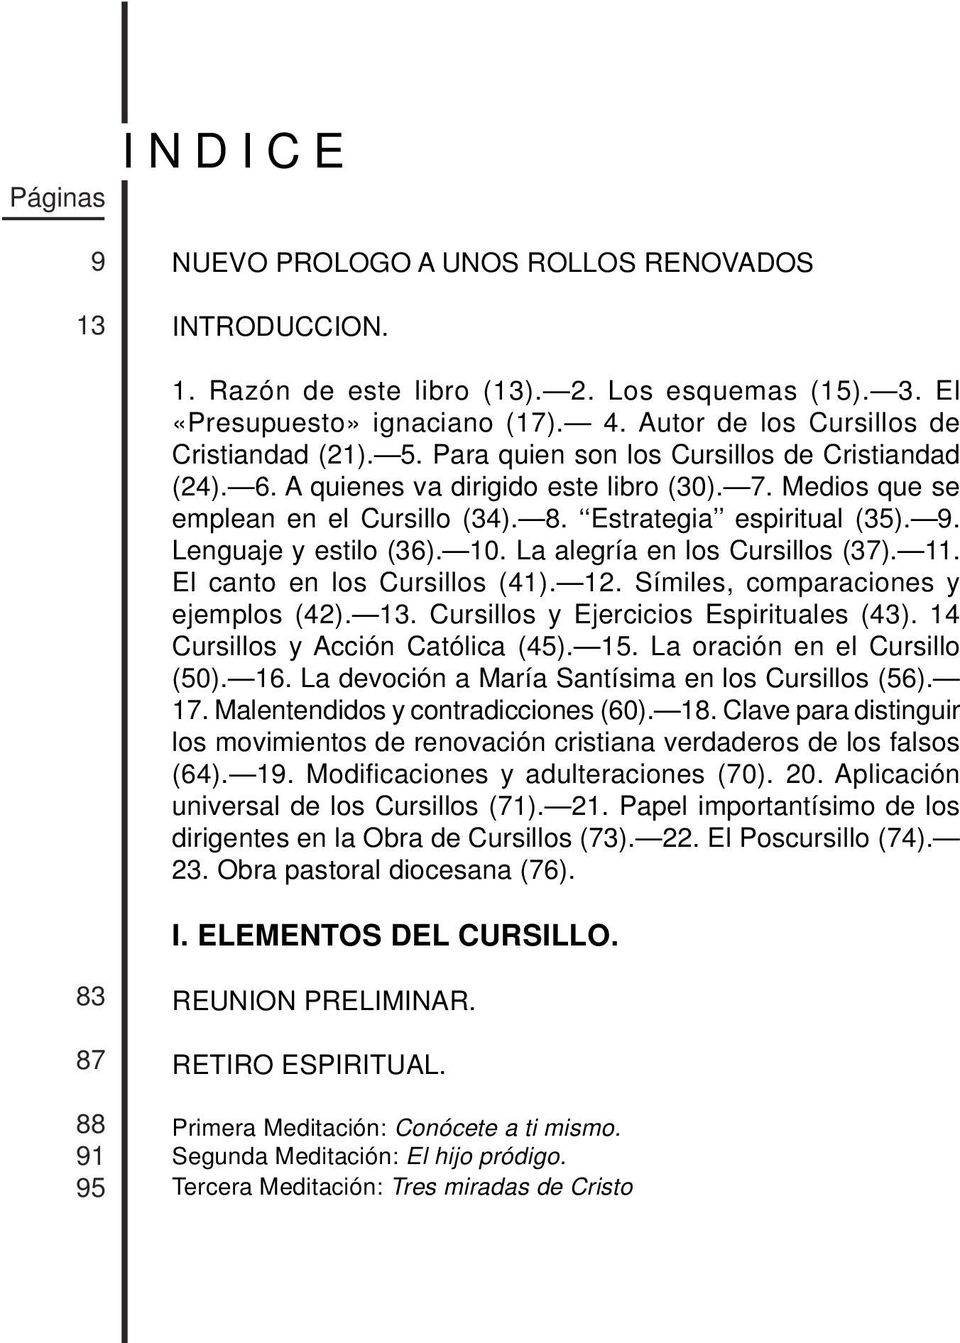 MANUAL DE DIRIGENTES DE CURSILLOS DE CRISTIANDAD - PDF Descargar libre